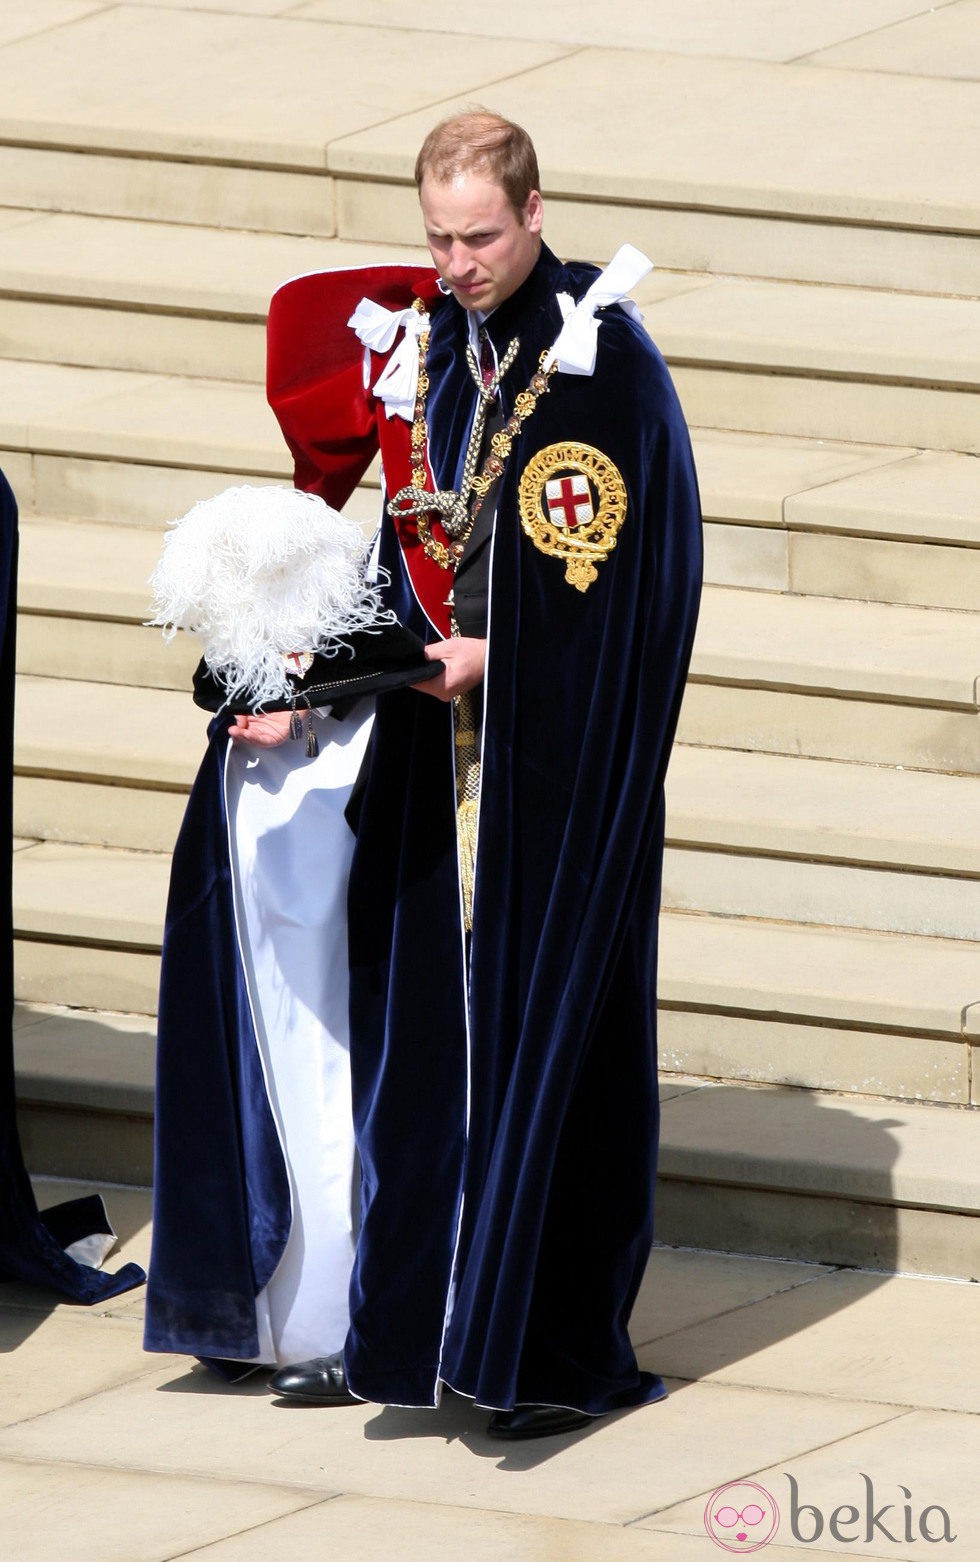 Guillermo de Inglaterra en la procesión de la Orden de la Jarretera